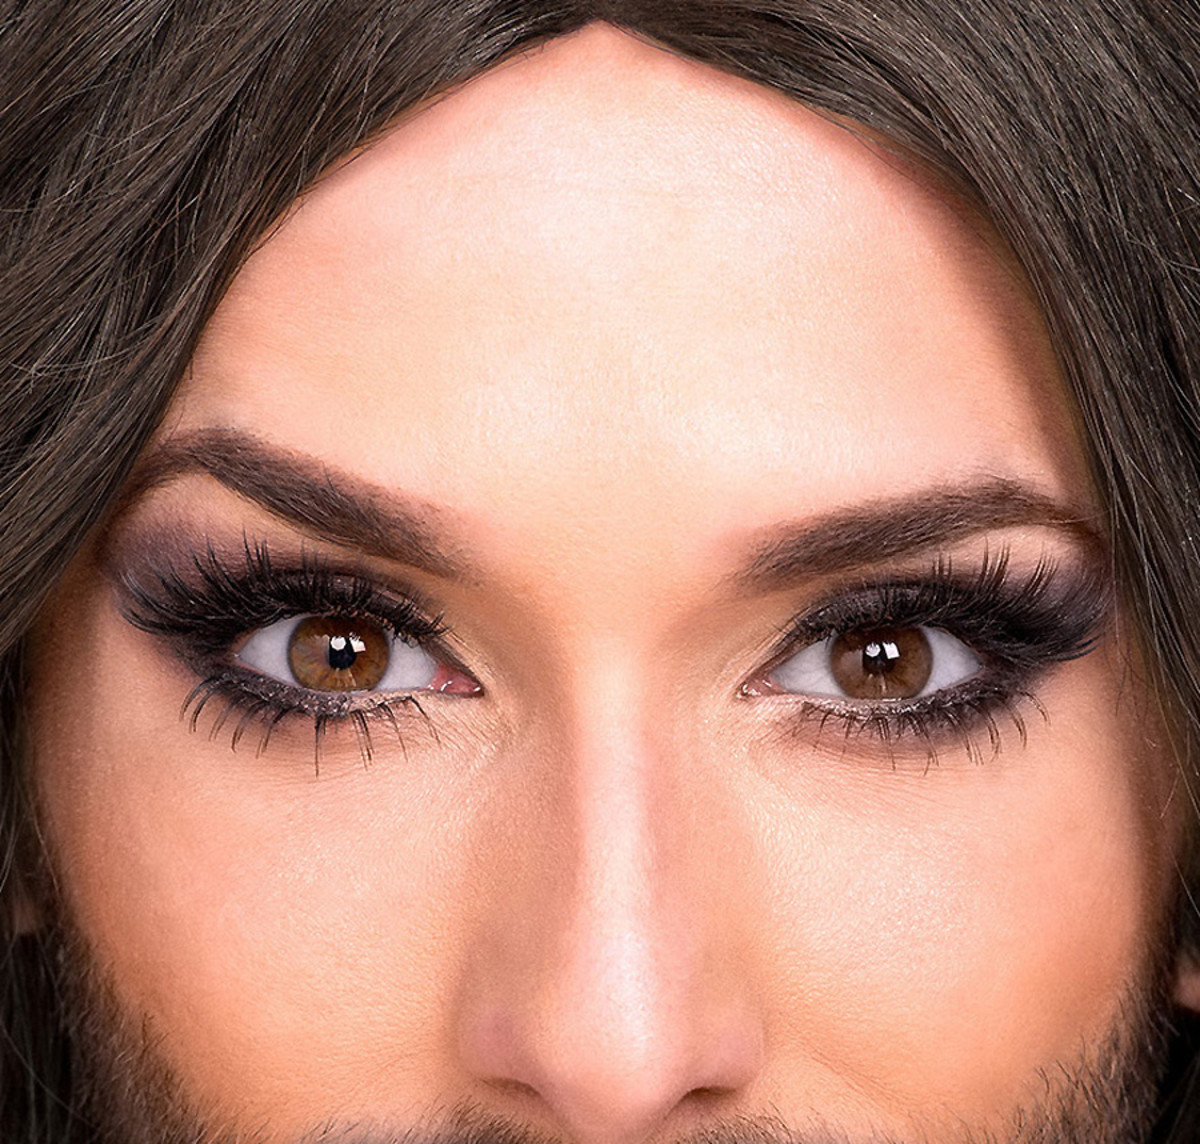 Conchita Wurst_Eurovision 2014 winner_eyes